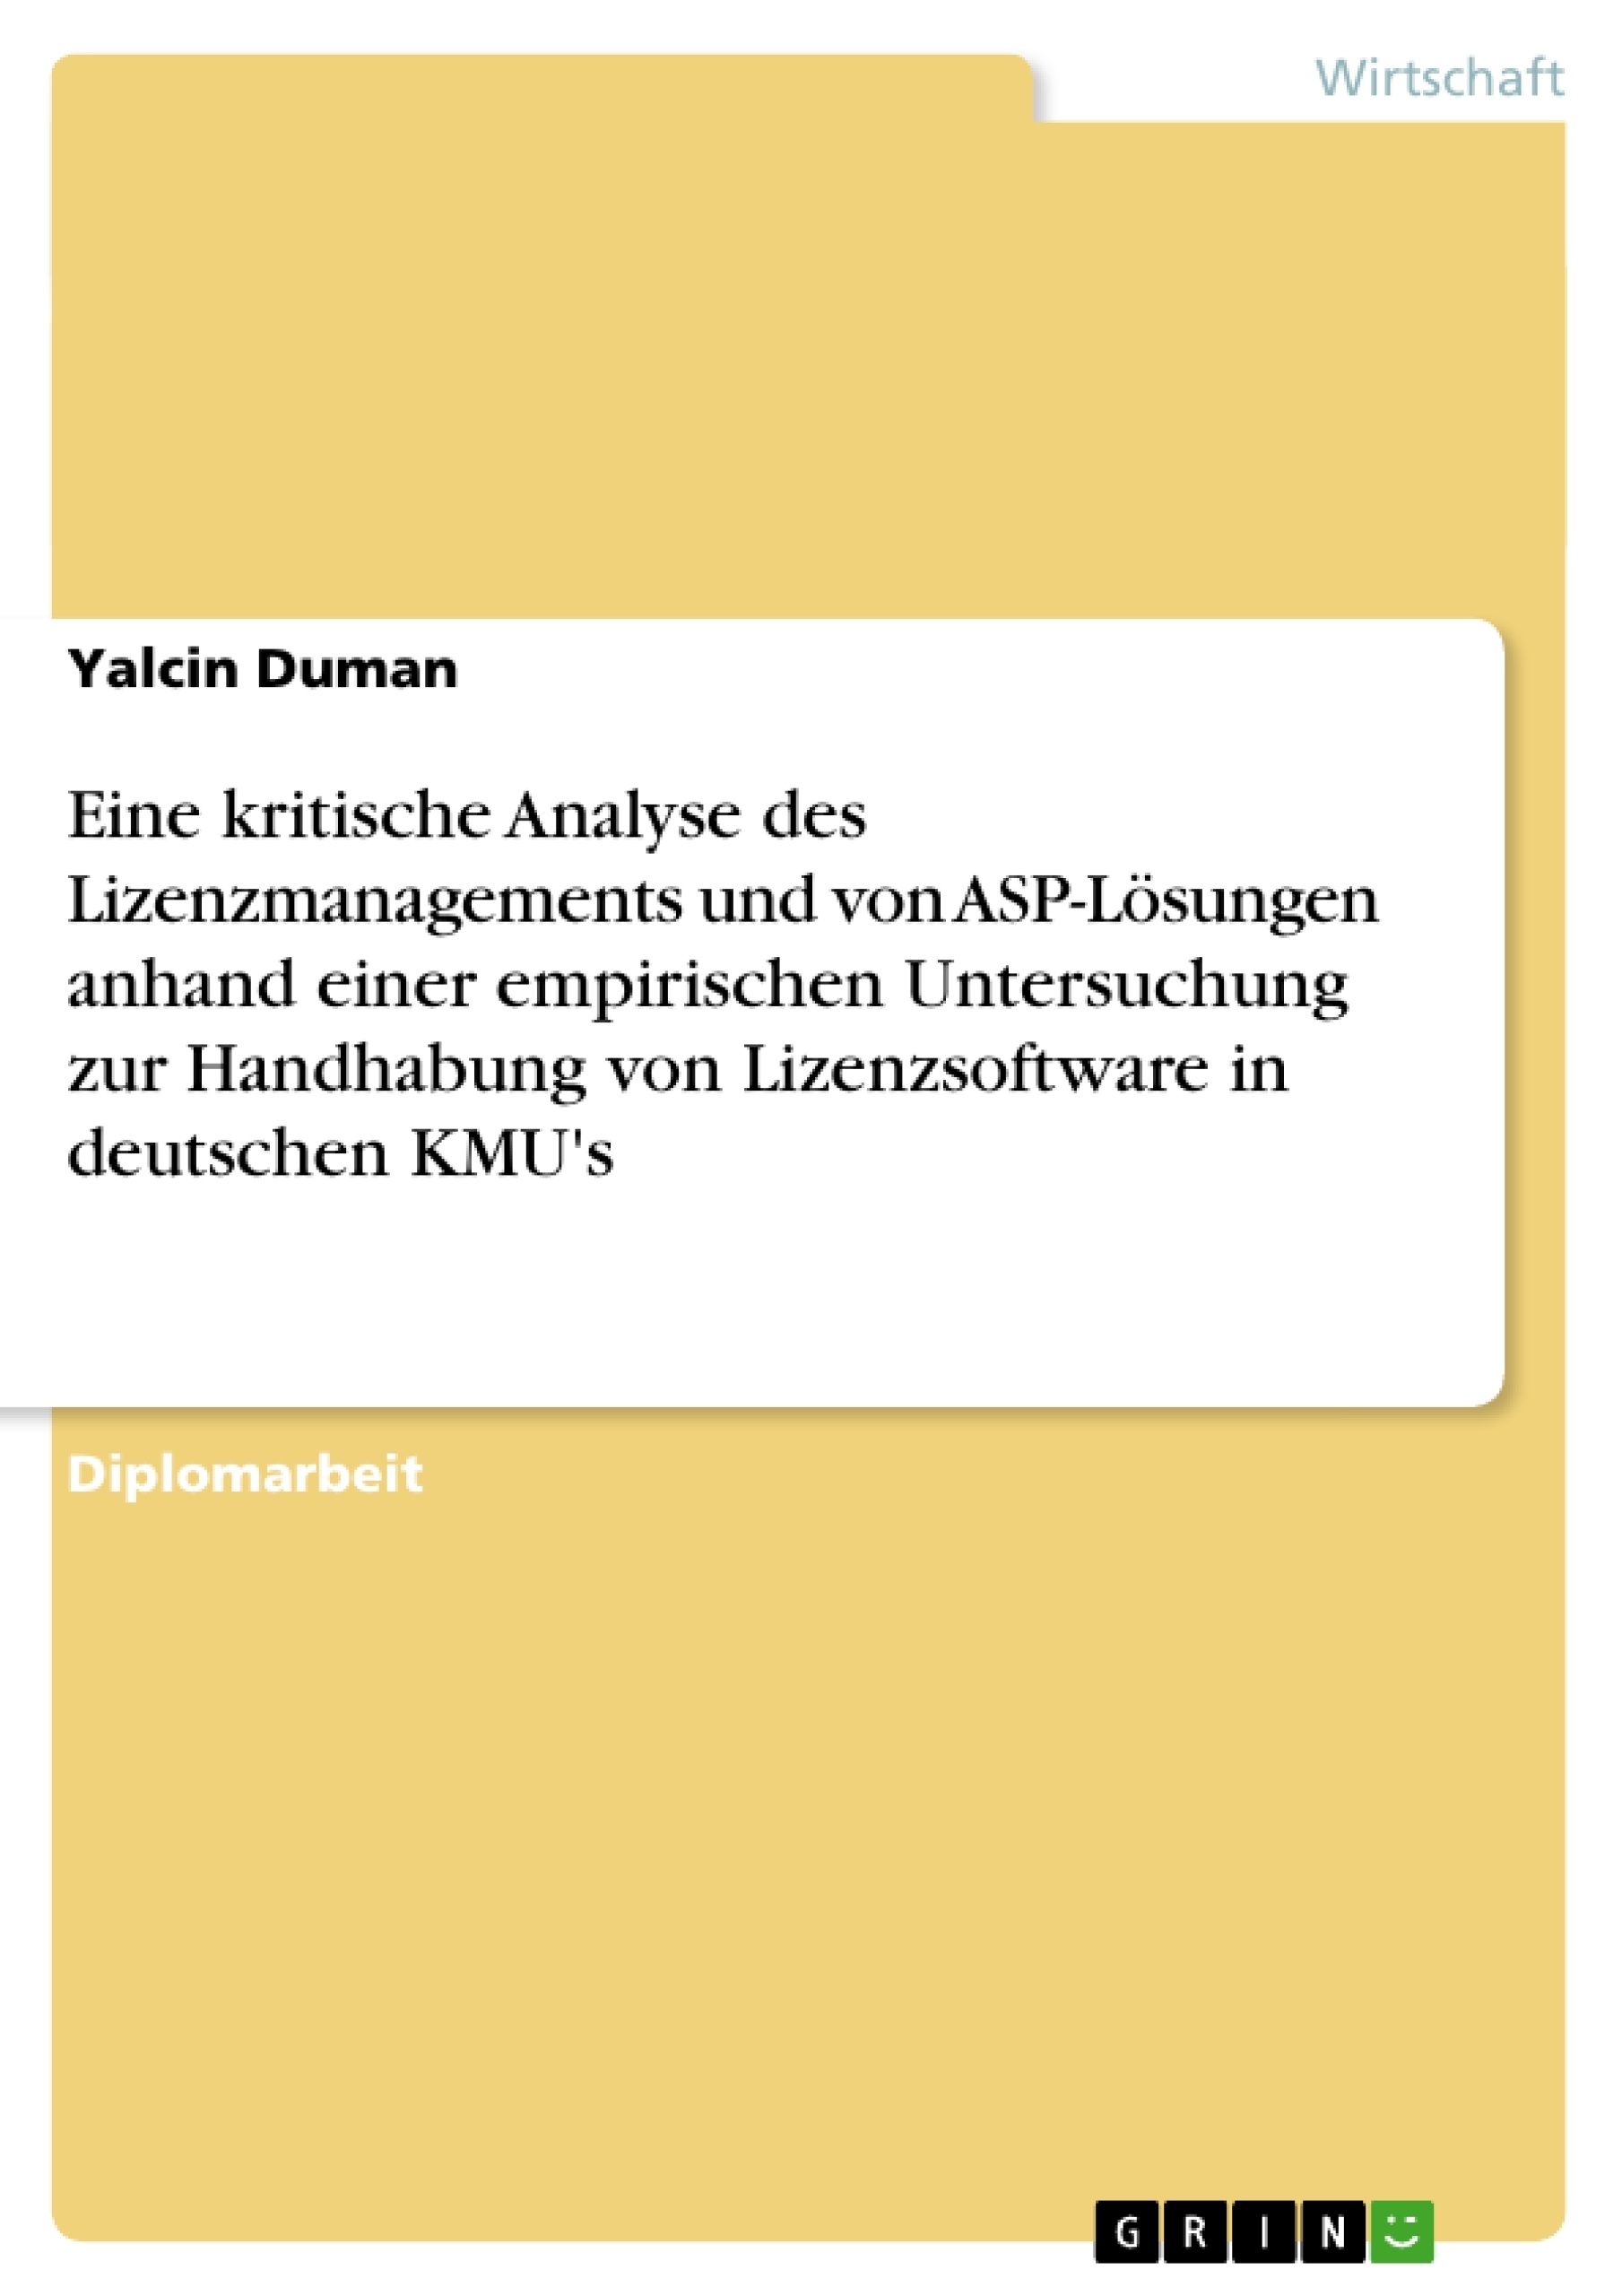 Titel: Eine kritische Analyse des Lizenzmanagements und von ASP-Lösungen anhand einer empirischen Untersuchung zur Handhabung von Lizenzsoftware in deutschen KMU's